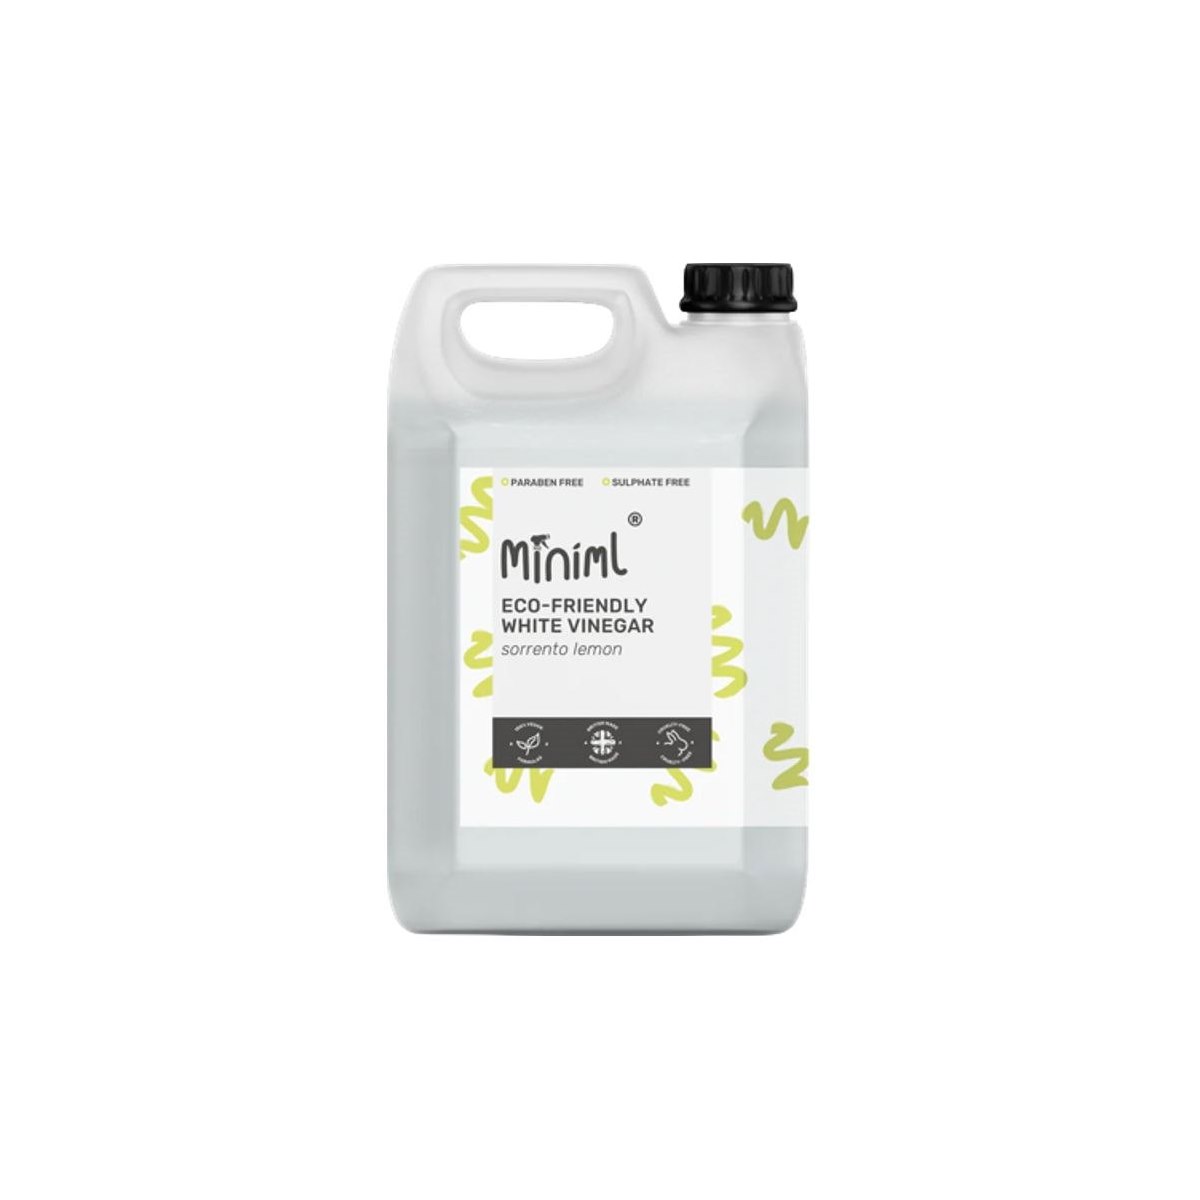 Miniml Eco Friendly White Vinegar 5L Sorrento Lemon